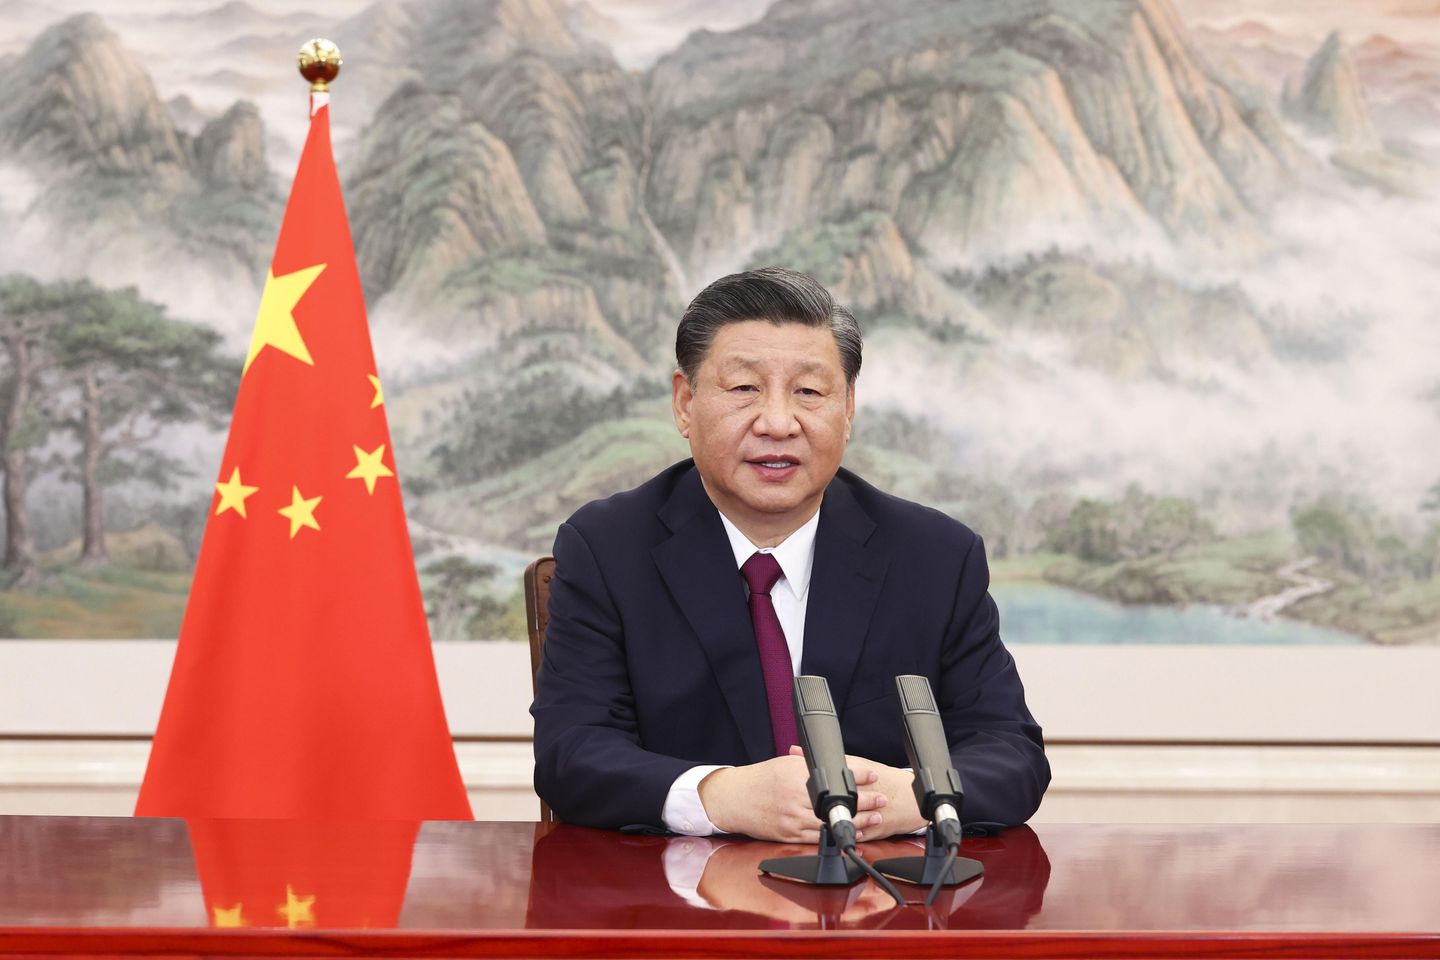 Çinli Xi, anlaşmazlıkları çözmek için müzakereleri teşvik ediyor, yaptırımlara karşı çıkıyor